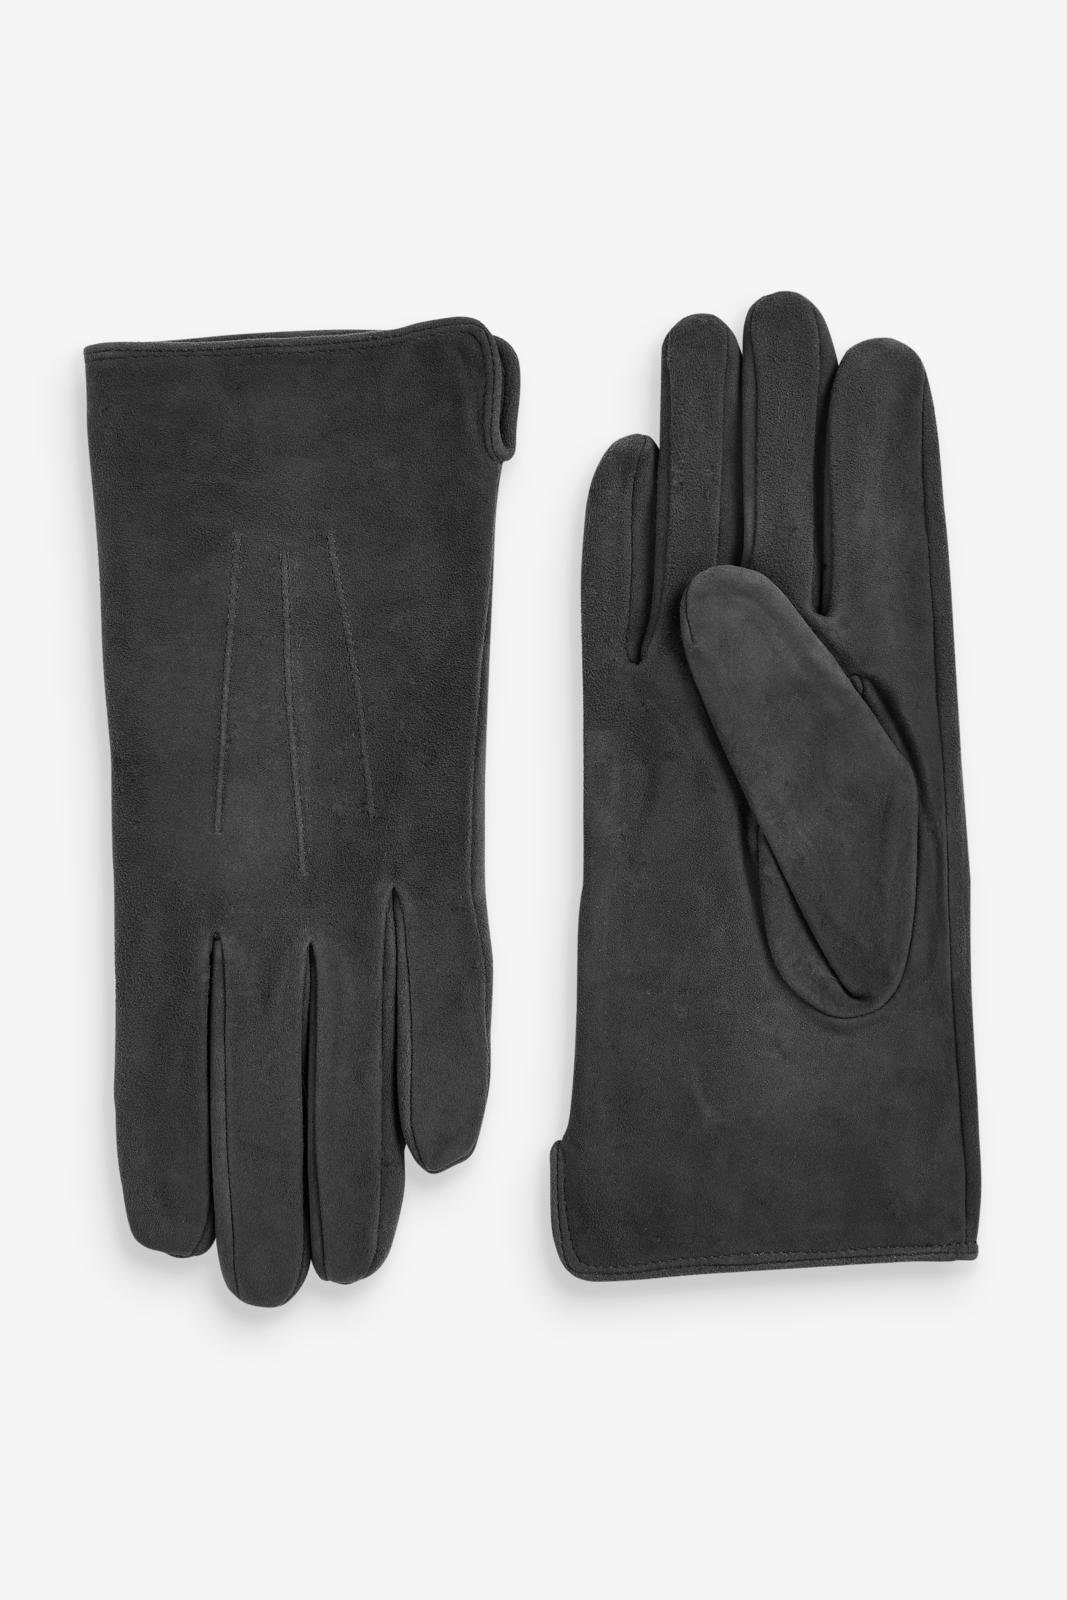 Handschuhe Next Grey Charcoal Strickhandschuhe